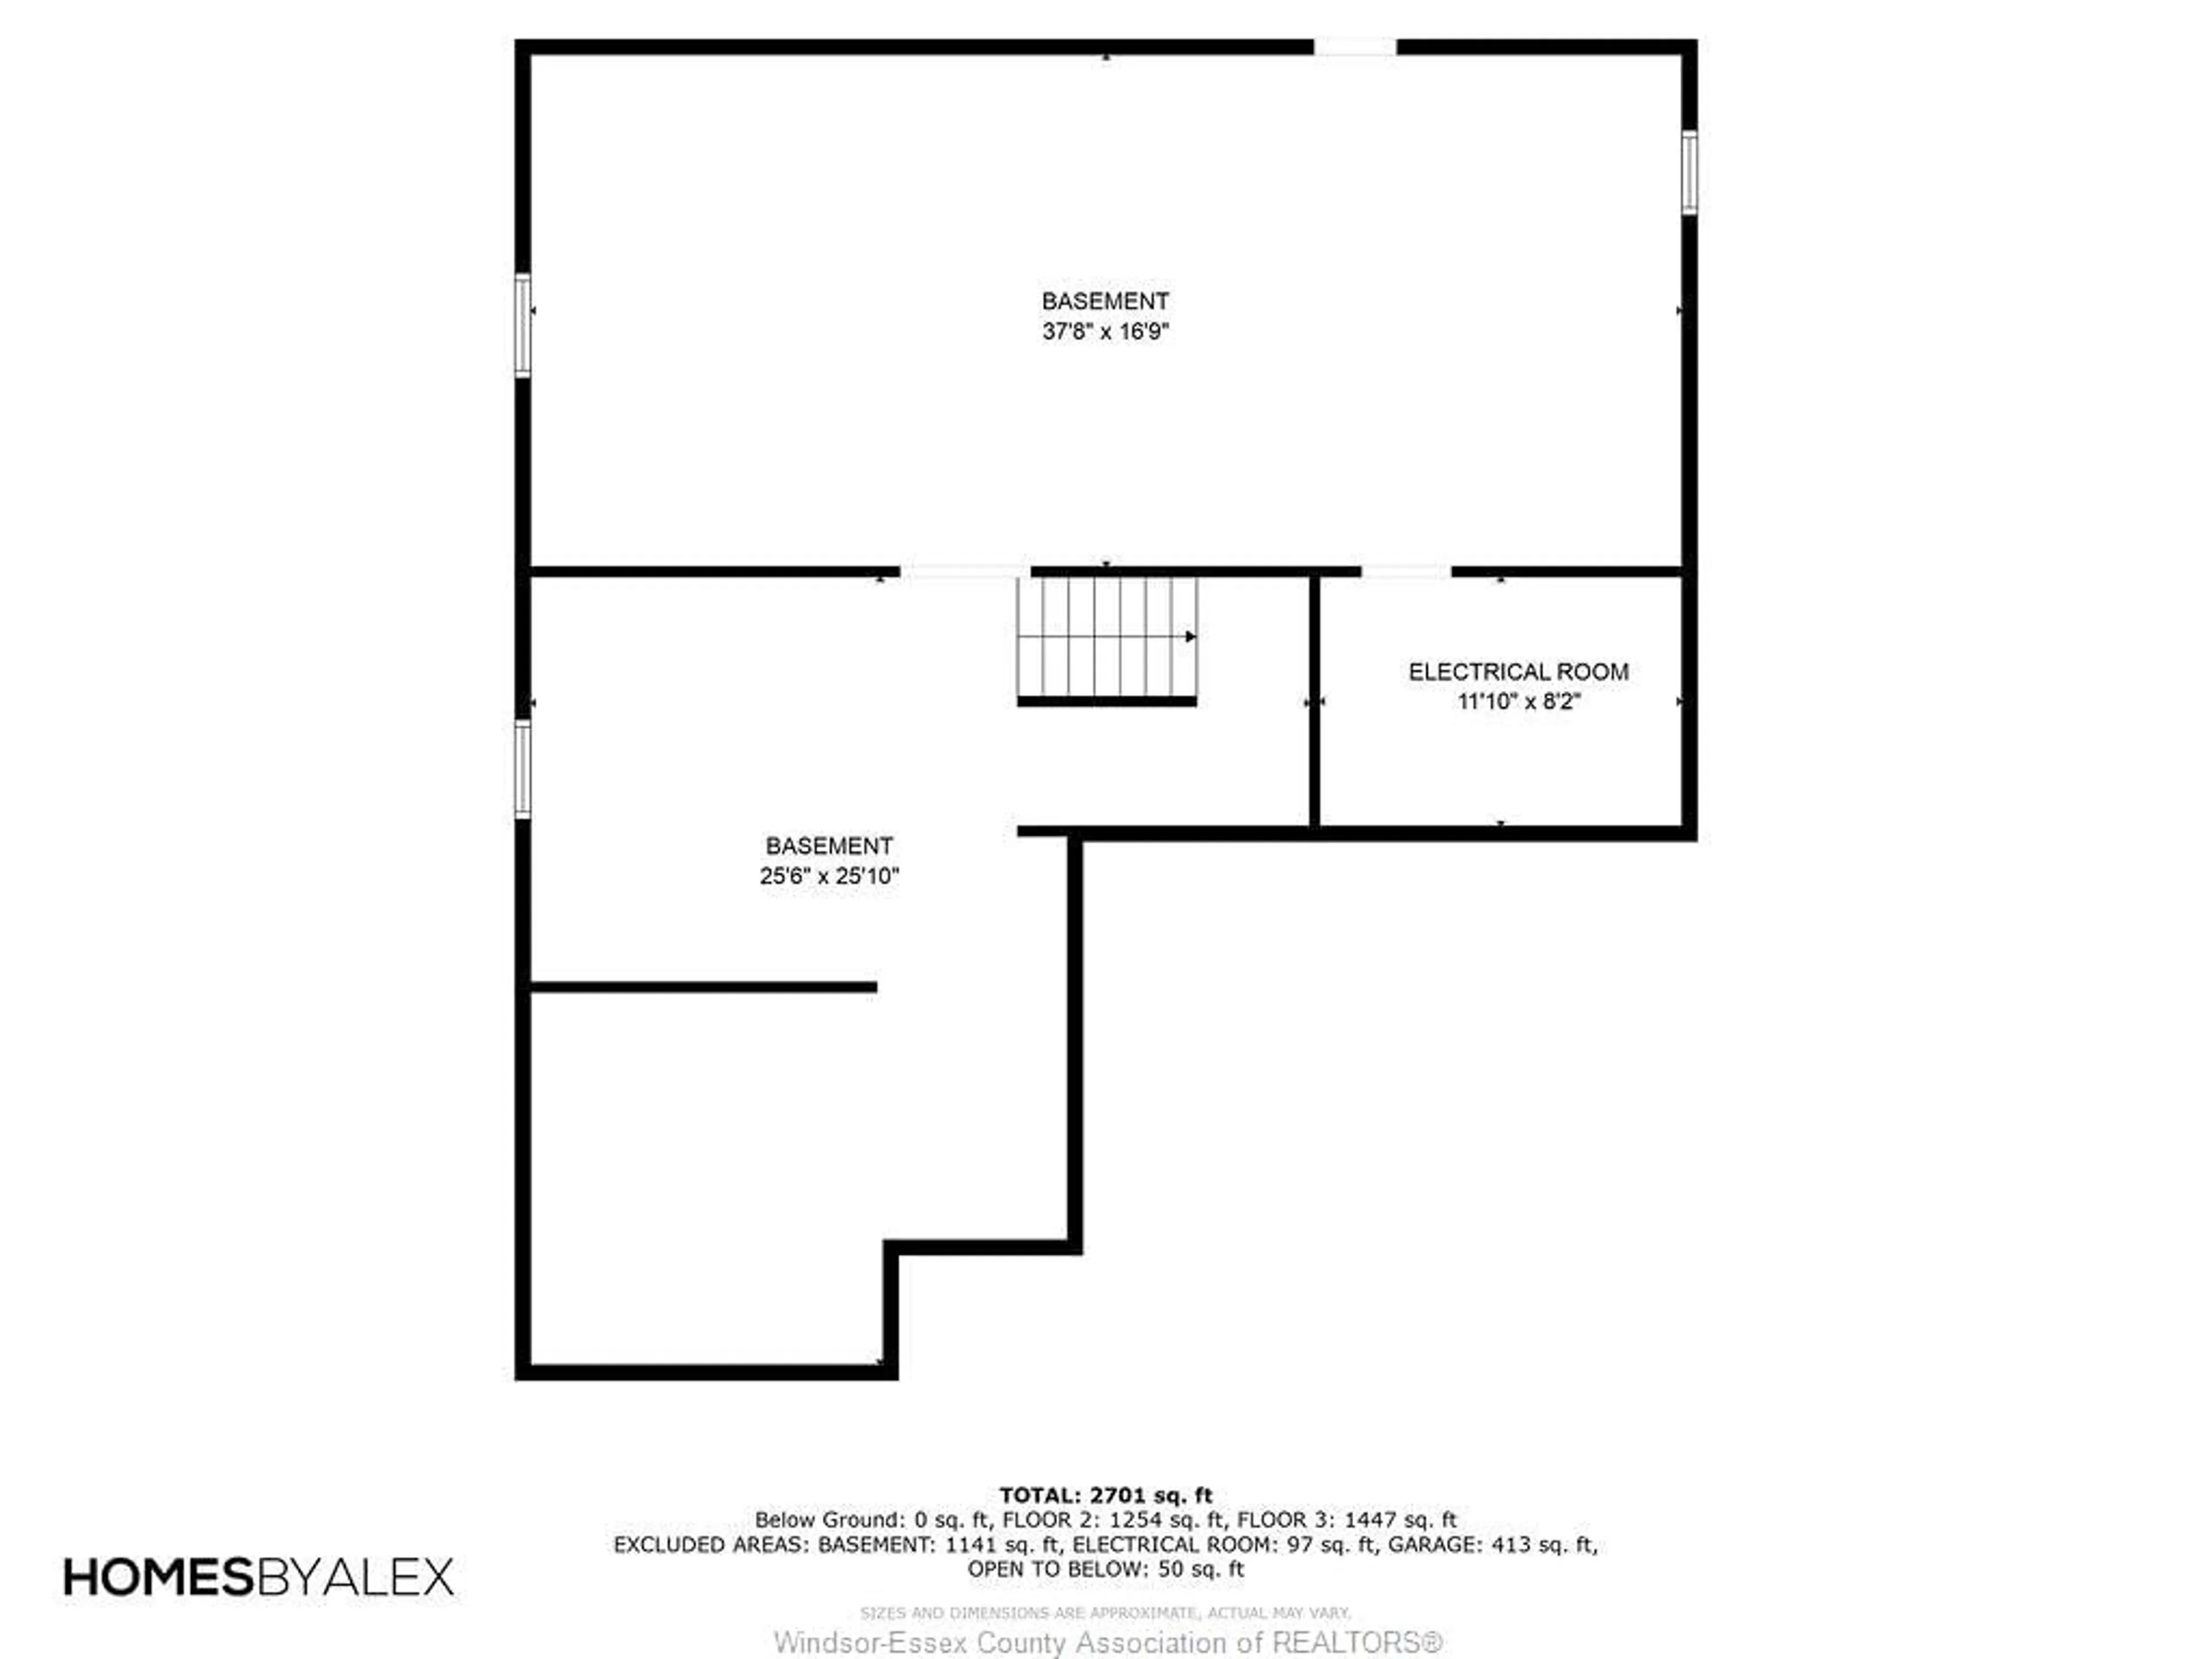 Floor plan for 1353 HELSINKI Crt, Windsor Ontario N8N 1M2